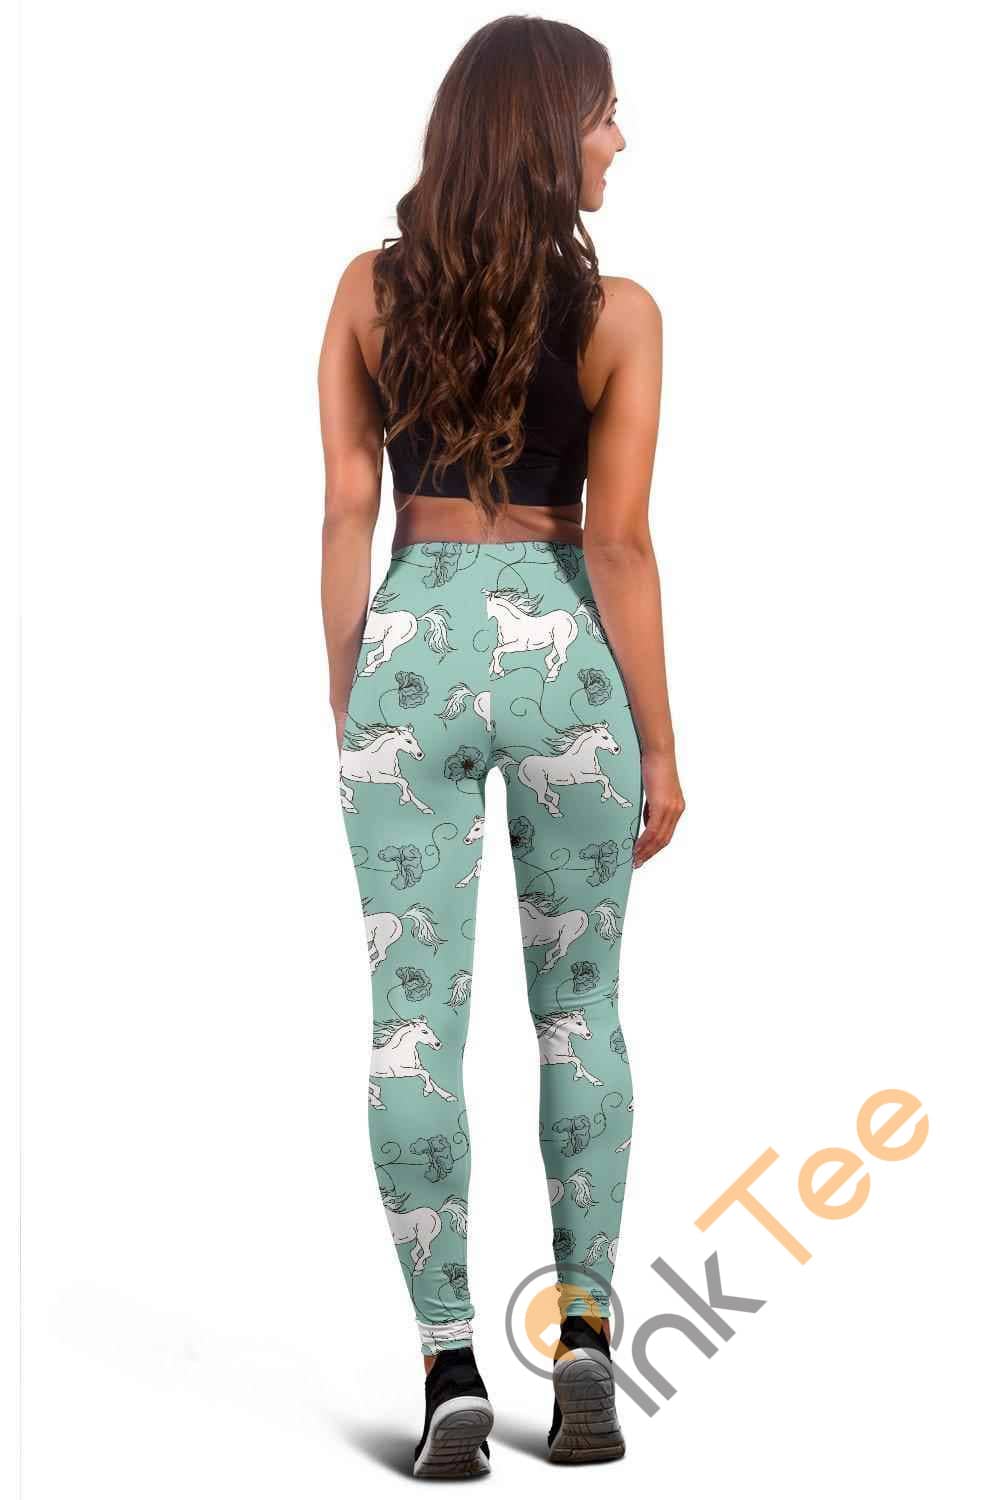 Inktee Store - Green Horse 3D All Over Print For Yoga Fitness Women'S Leggings Image